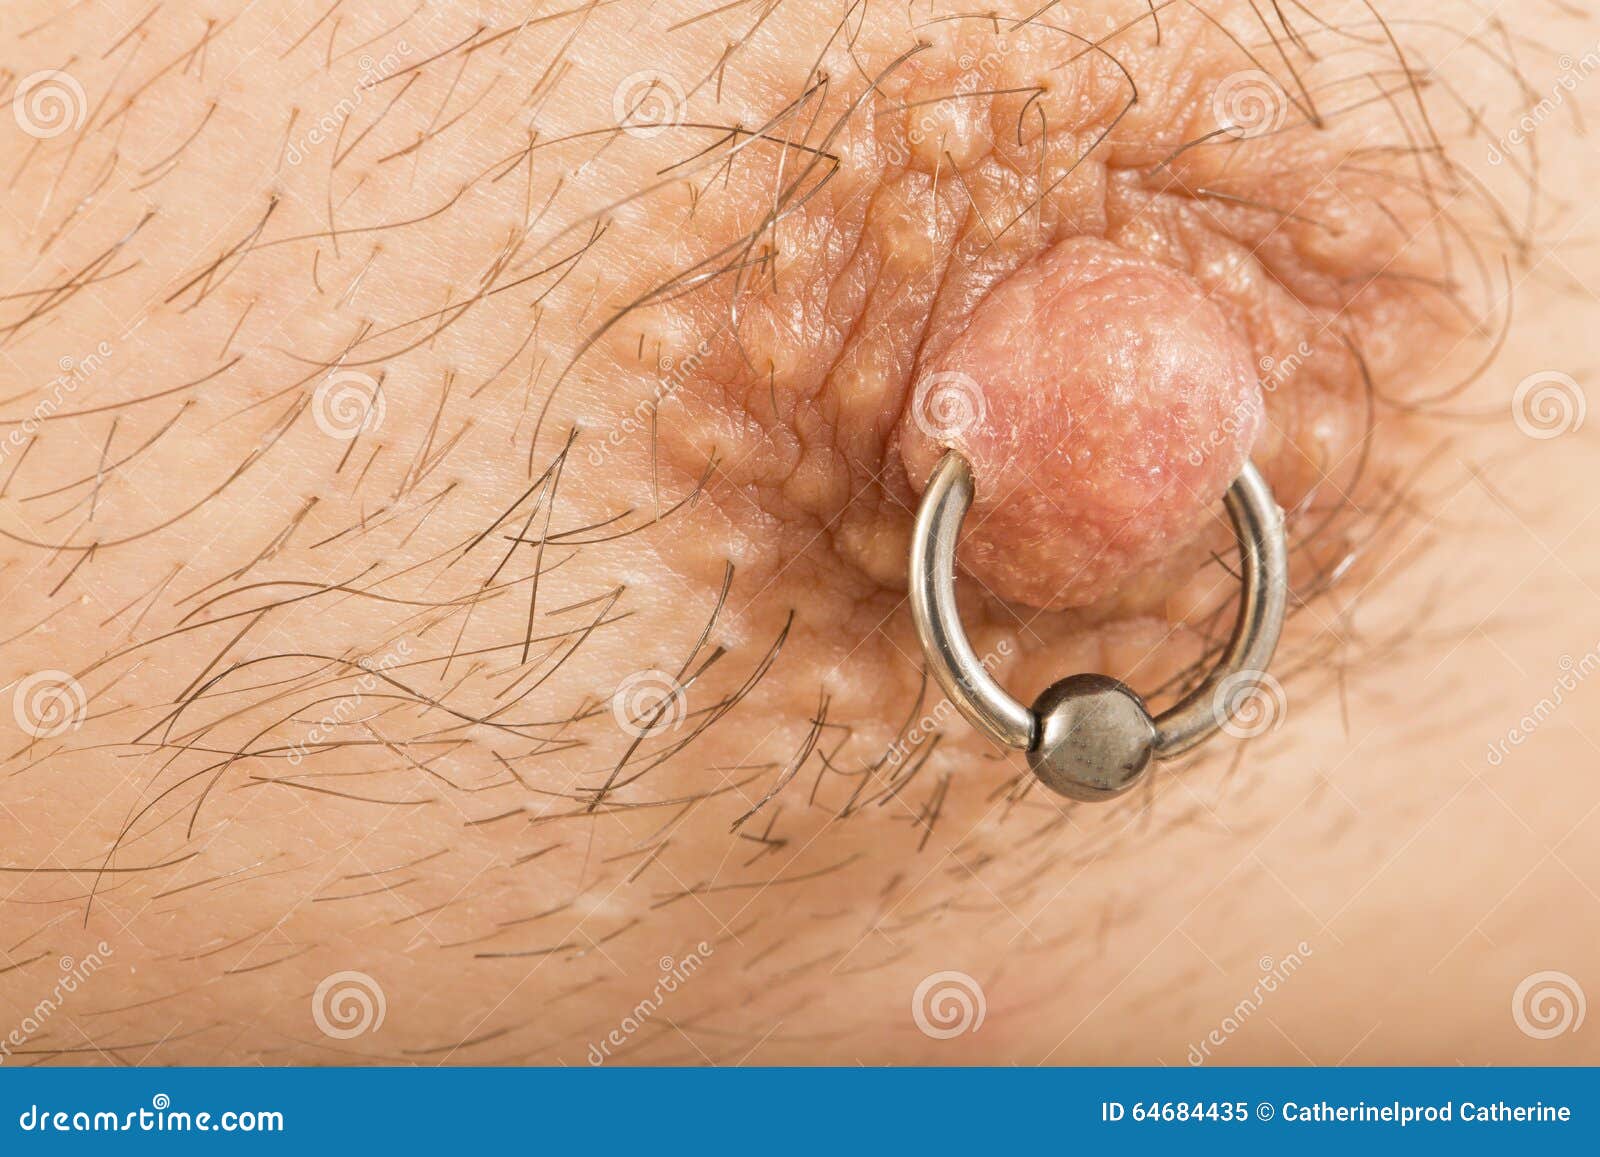 Pics Of Male Nipples 110